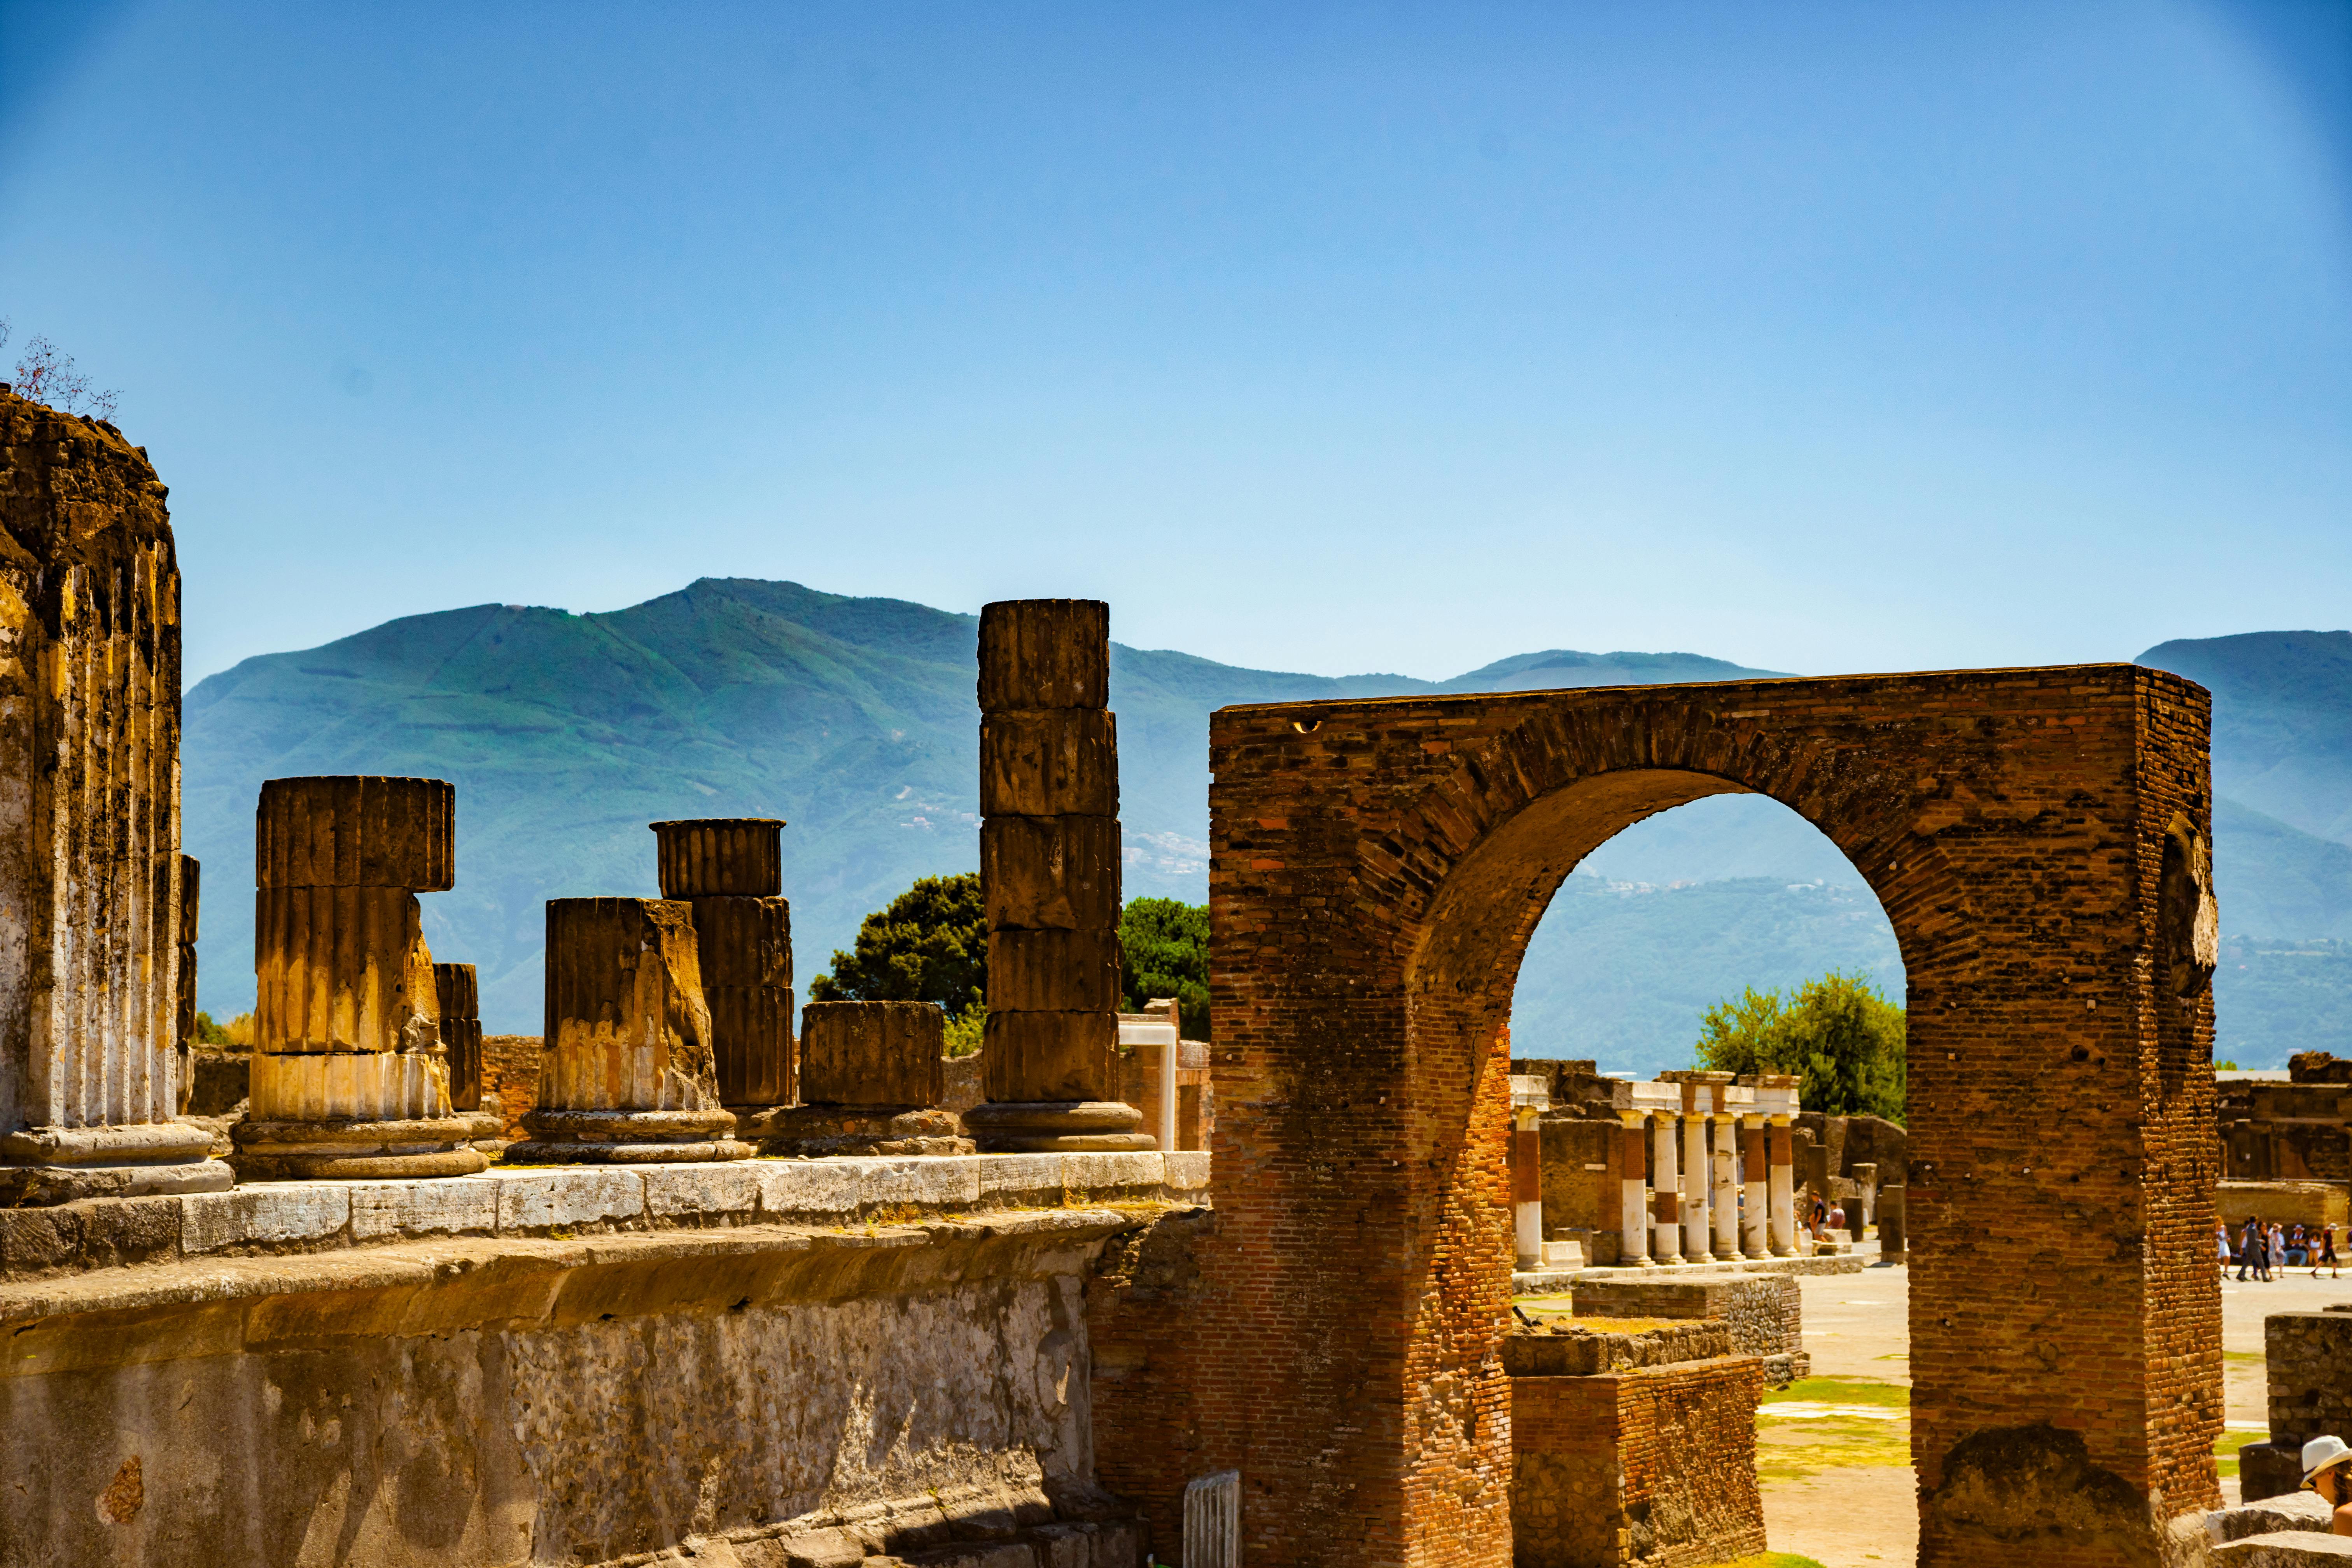 virtual tour pompeii